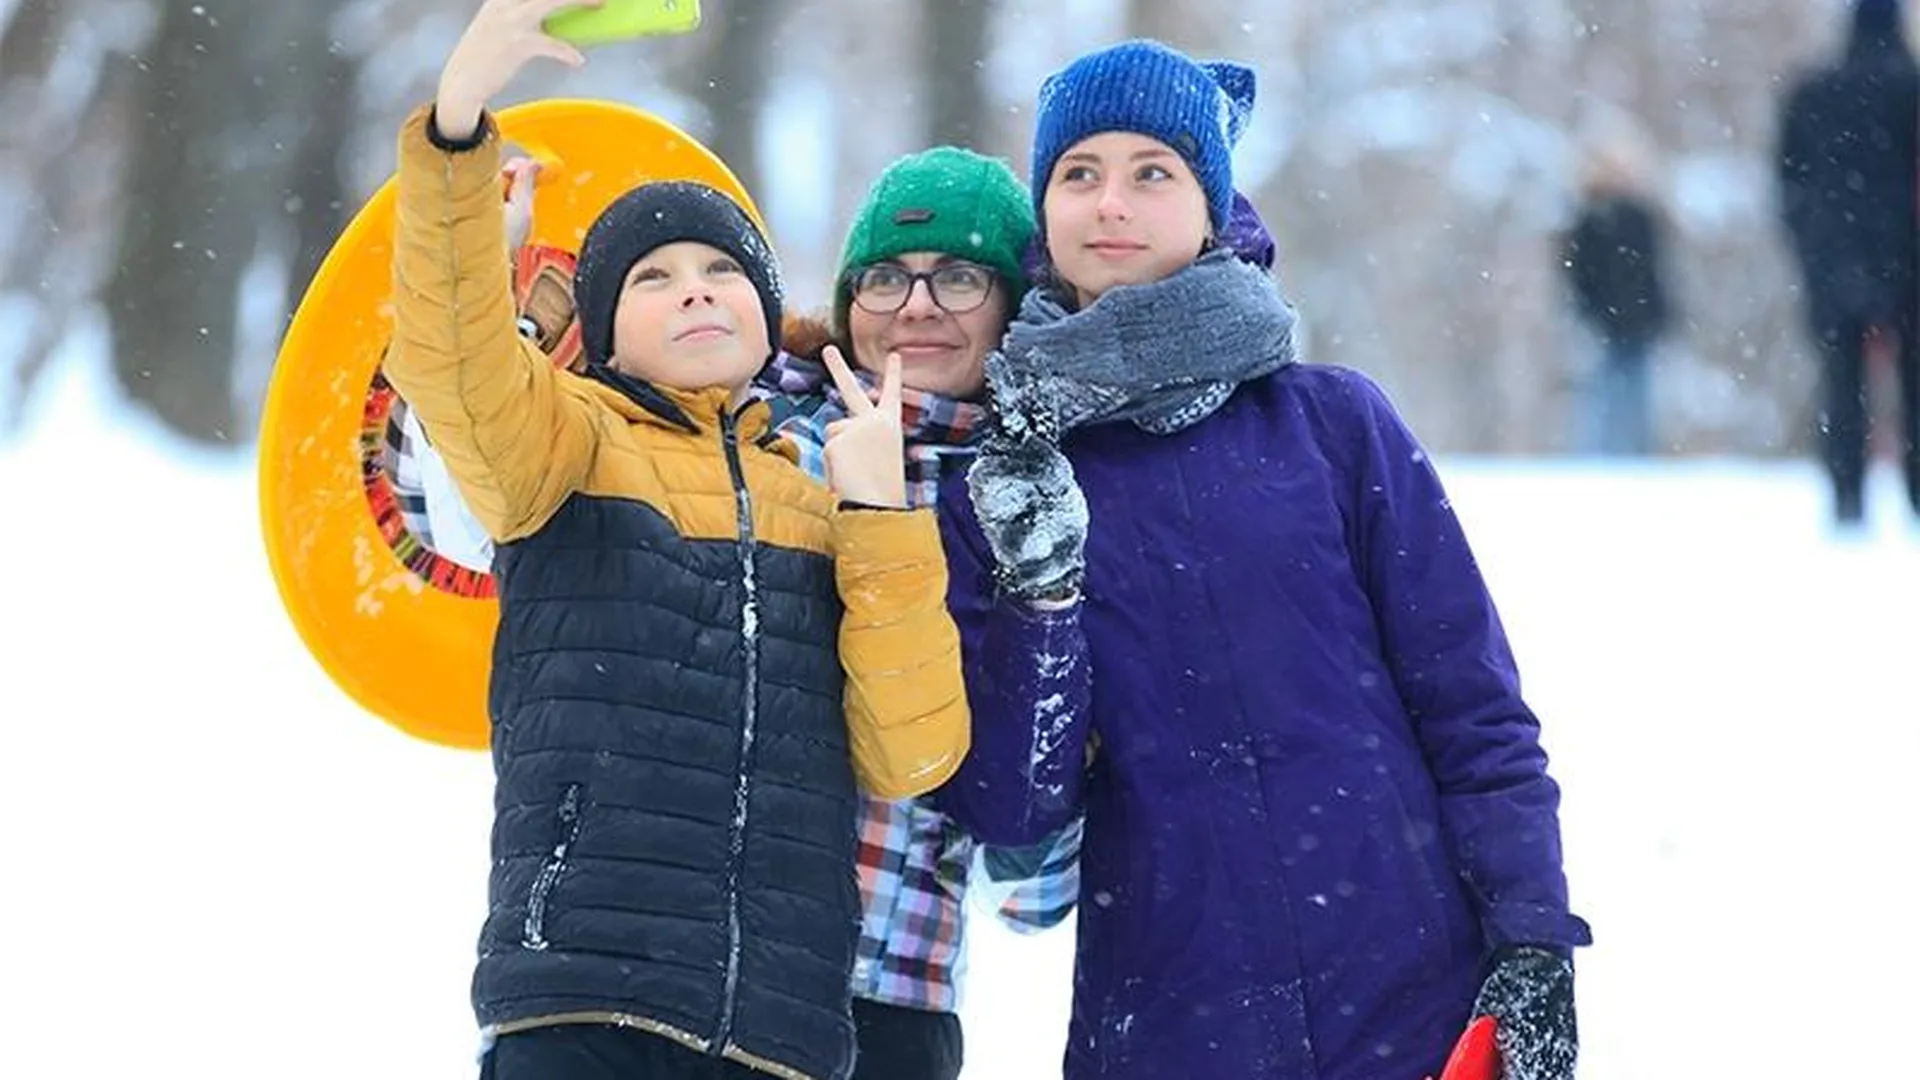 Горки, тусы, Новый год: чем лучшие парки Подмосковья удивят посетителей зимой